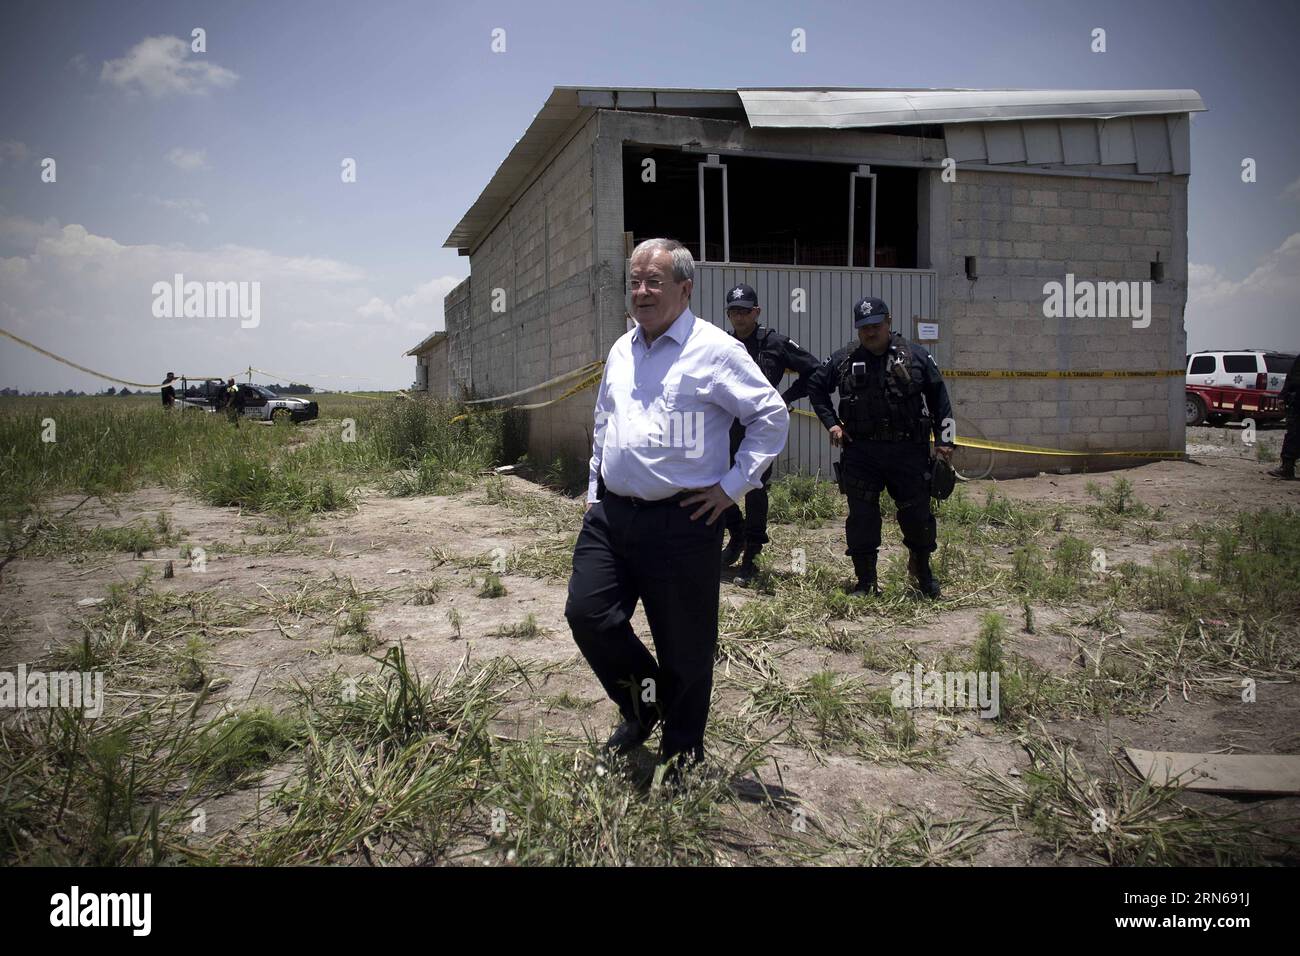 ALMOLOYA DE JUAREZ, 15 juillet 2015-- le commissaire à la sécurité nationale du Mexique Monte Alejandro Rubido Garcia (Front) se tient dans les environs de la maison présumée où a été construit le tunnel, par lequel s est échappé de prison le seigneur de la drogue du Mexique Joaquin El Chapo Guzman, à Almoloya de Juarez Mexique, à la périphérie de Mexico, Mexique, le 15 juillet 2015. Guzman, chef du cartel de la drogue de Sinaloa, a disparu samedi soir de la prison de haute sécurité Altiplano à l'extérieur de Mexico, selon la Commission de sécurité nationale. MEXIQUE-ALMOLOYA DE JUAREZ-GUZMAN ALEJANDROXAYALA PUBLICATI Banque D'Images